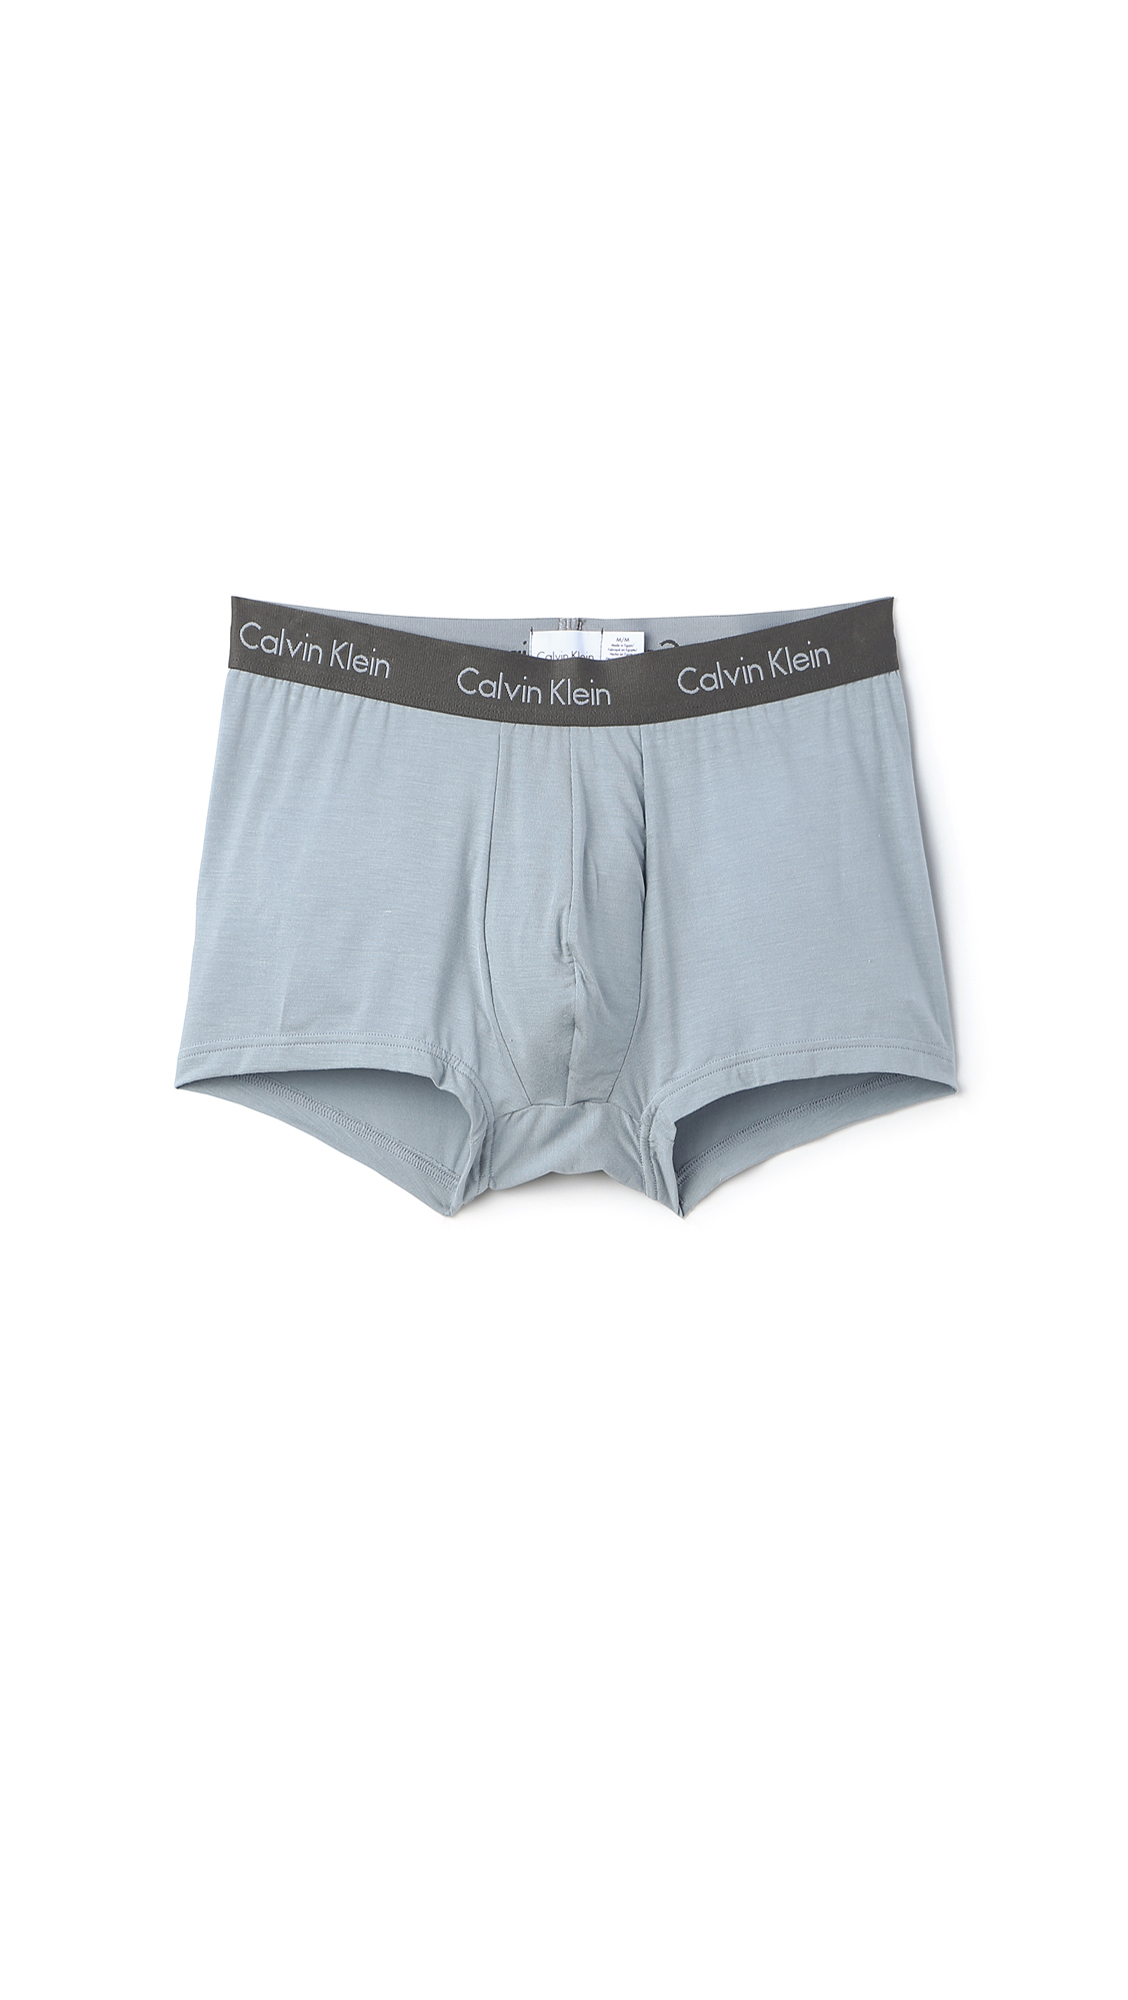 Lyst - Calvin Klein Body Modal Trunks in Gray for Men